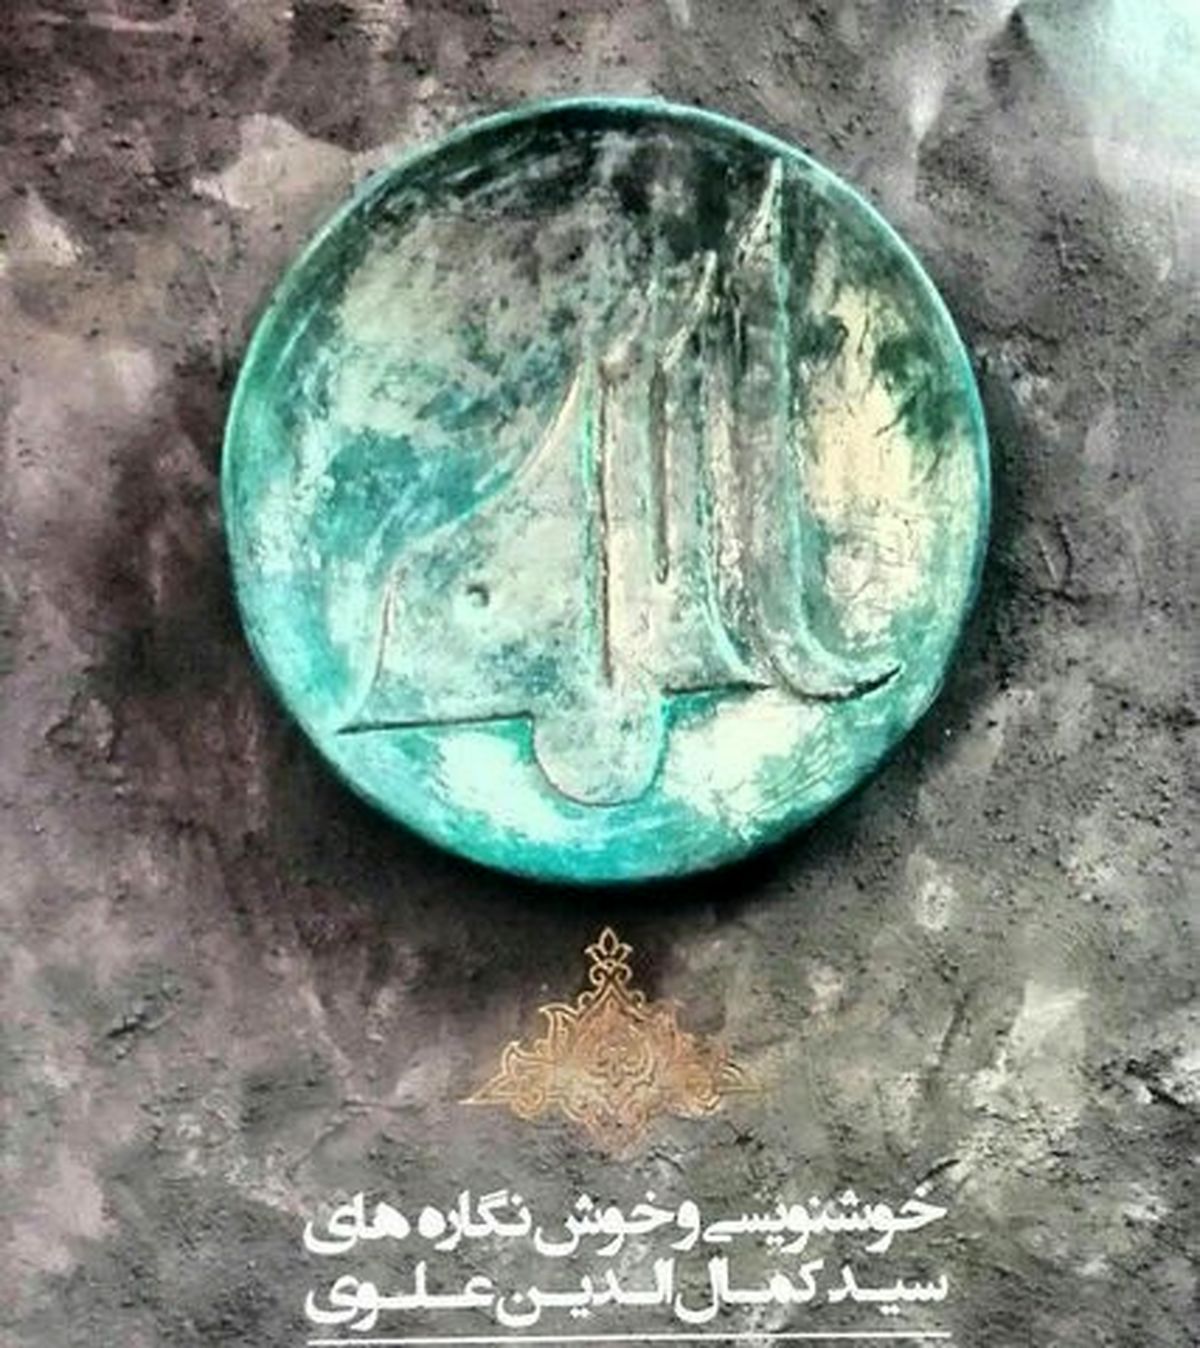 نمایشگاه خوشنویسی و خوش نگاره های سیدکمال الدین علوی در نقش خانه